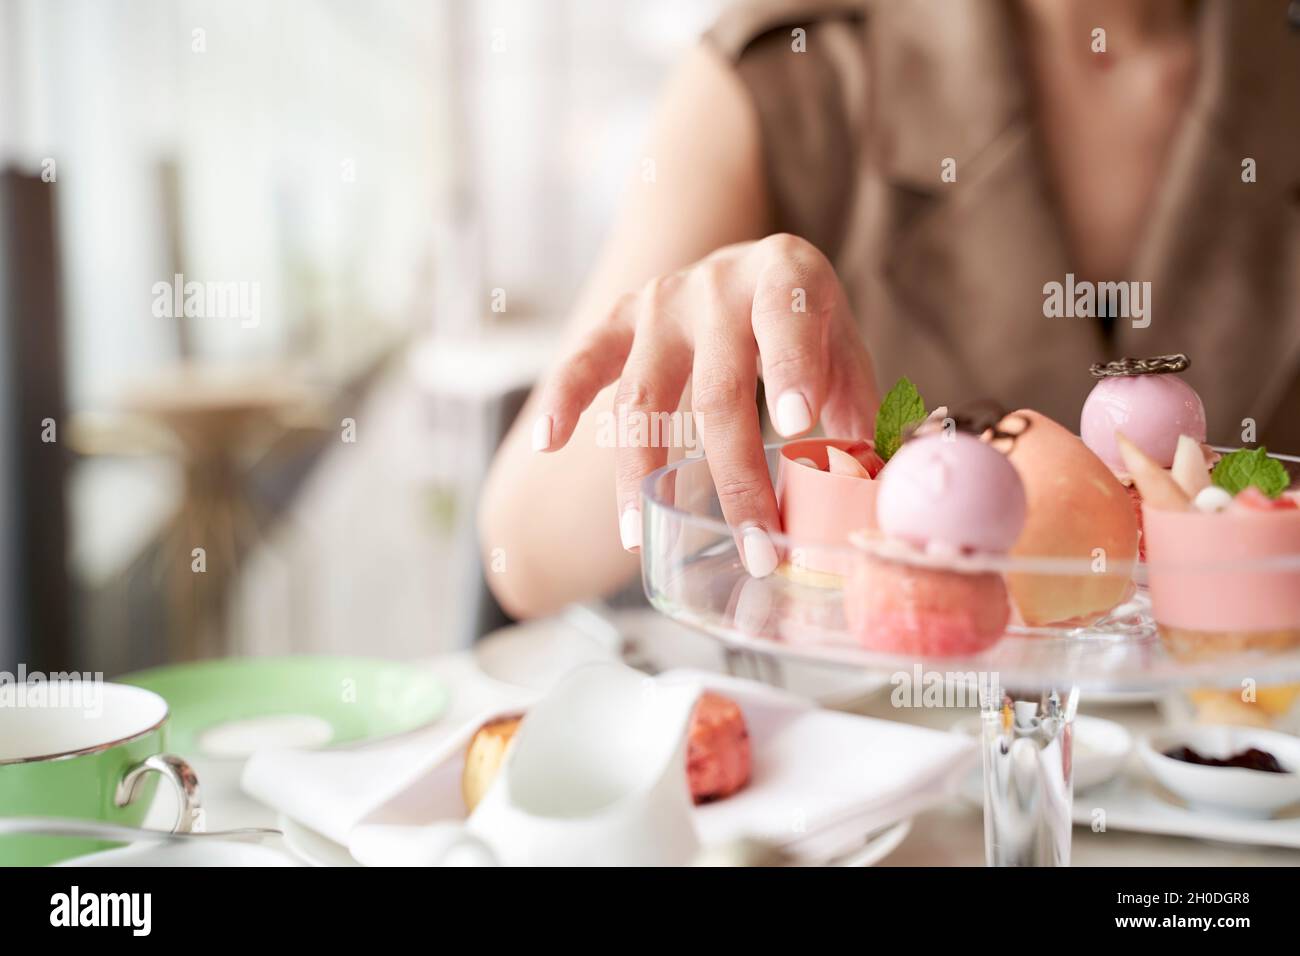 mano de mujer asiática recogiendo un postre del plato de cristal Foto de stock